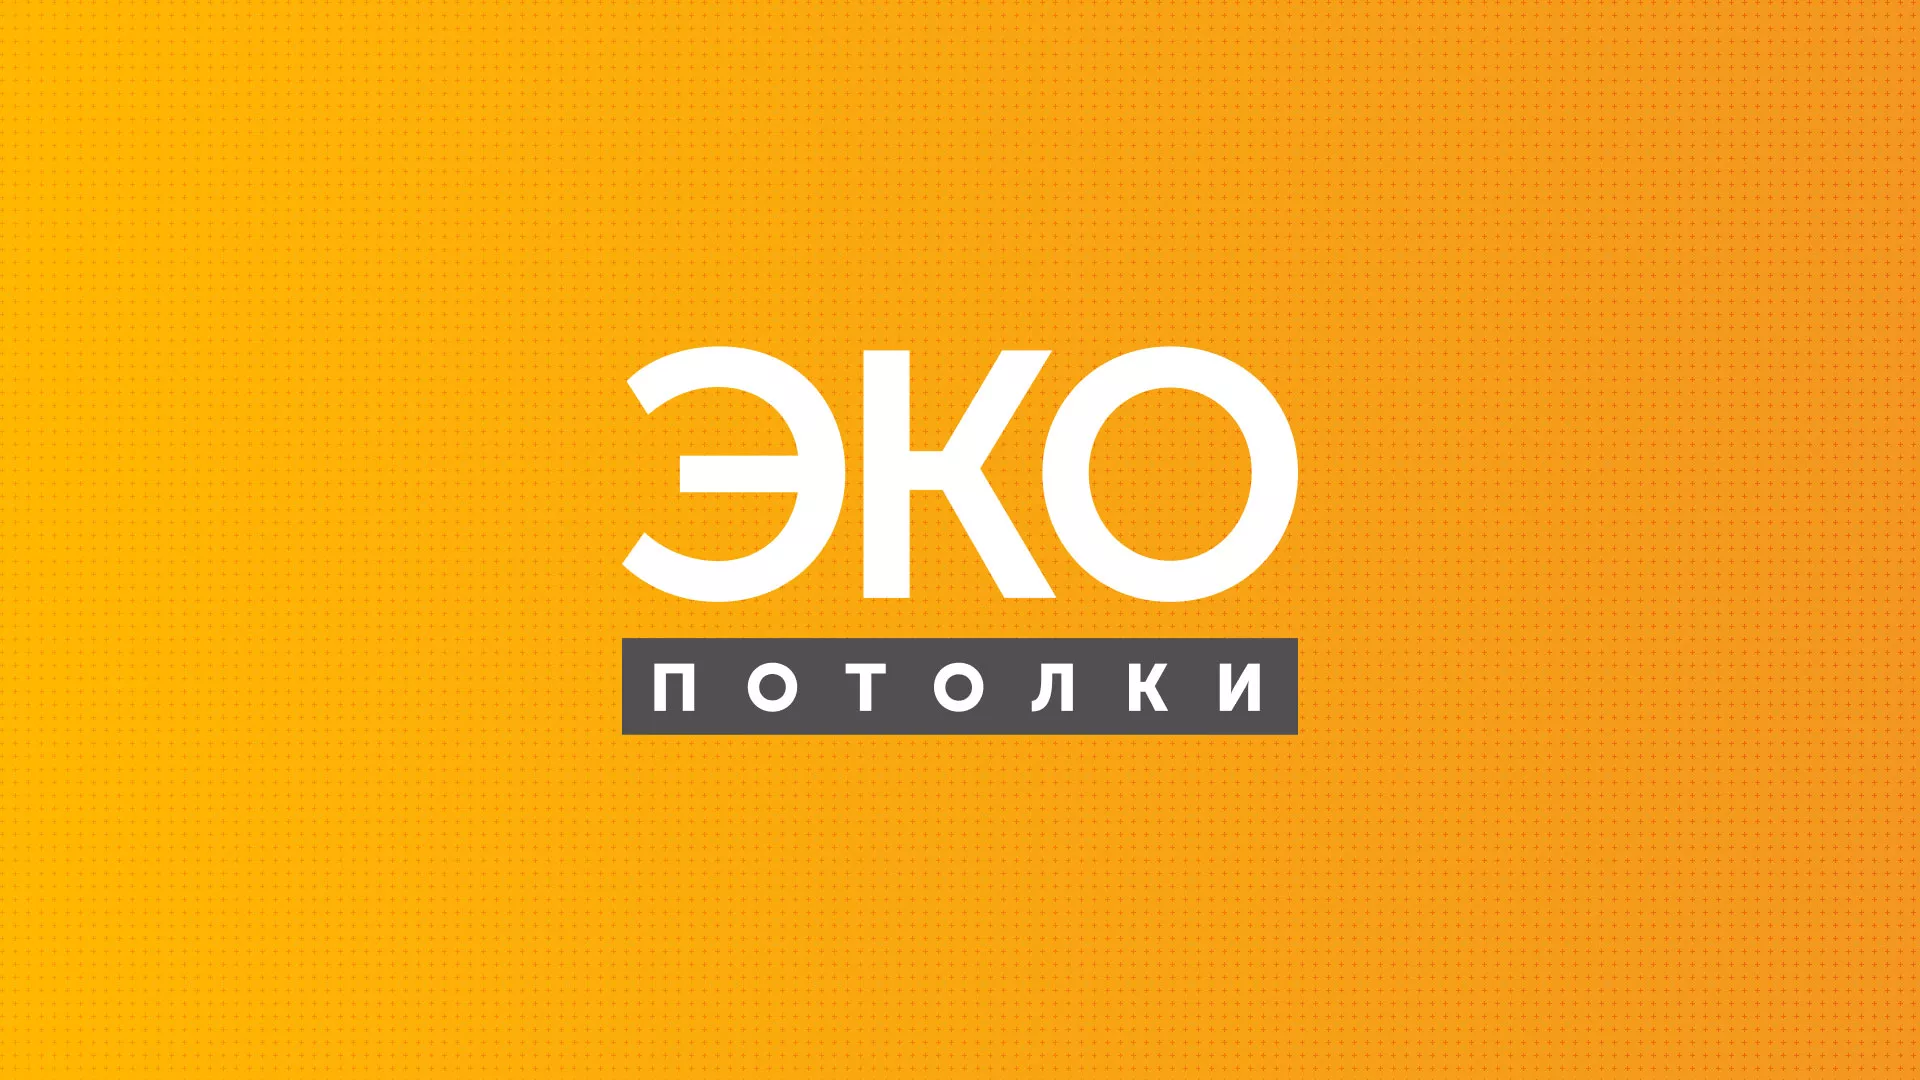 Разработка сайта по натяжным потолкам «Эко Потолки» в Калининграде